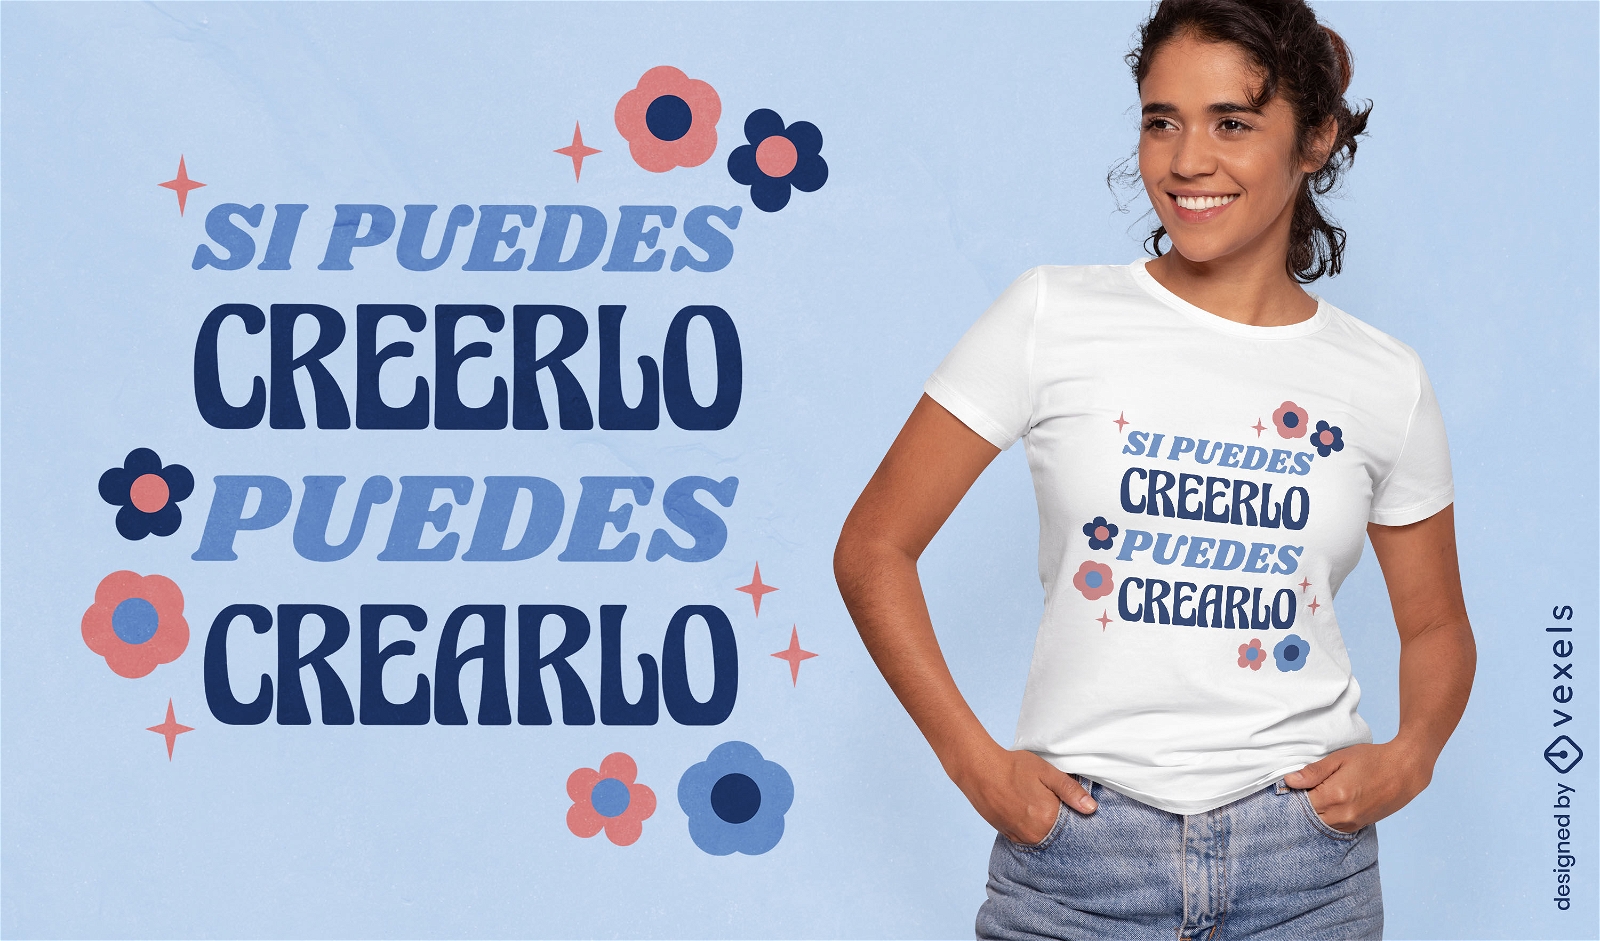 Cita motivacional en diseño de camiseta en español.